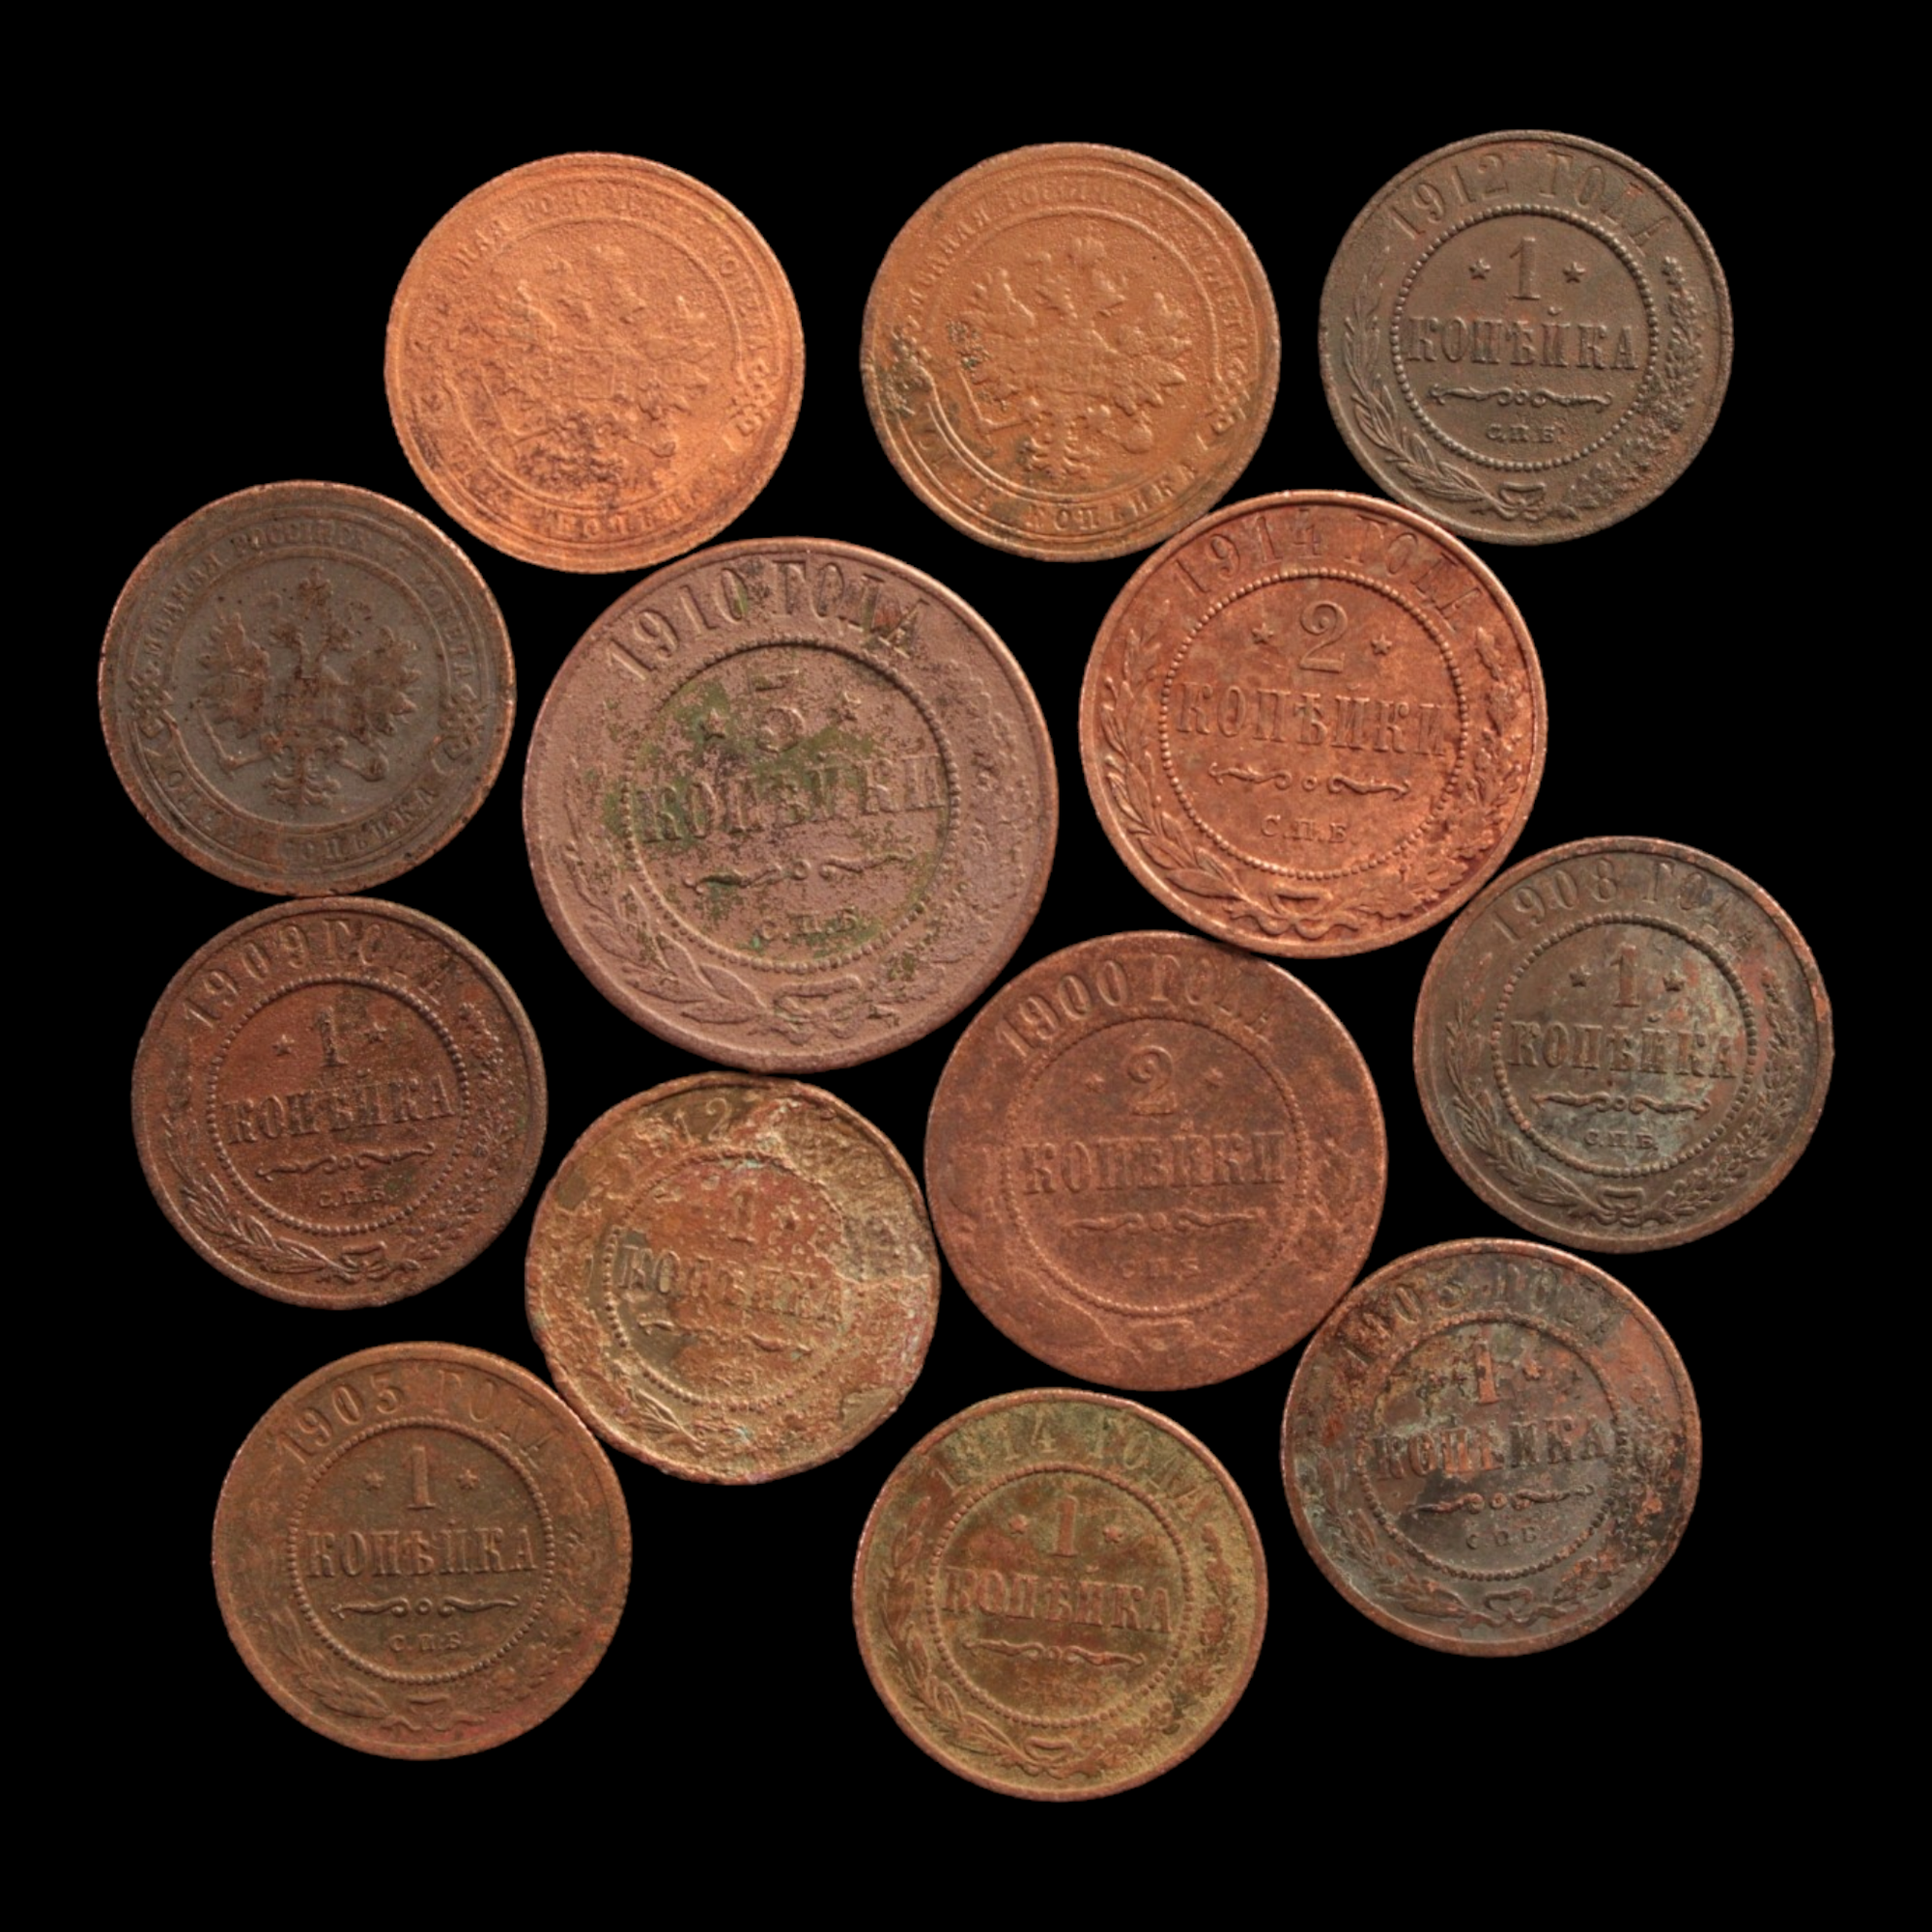 Russia, Tsar Nicholas II, Lot of 13 Copper Coins - 1894 to 1917 - Russian Empire